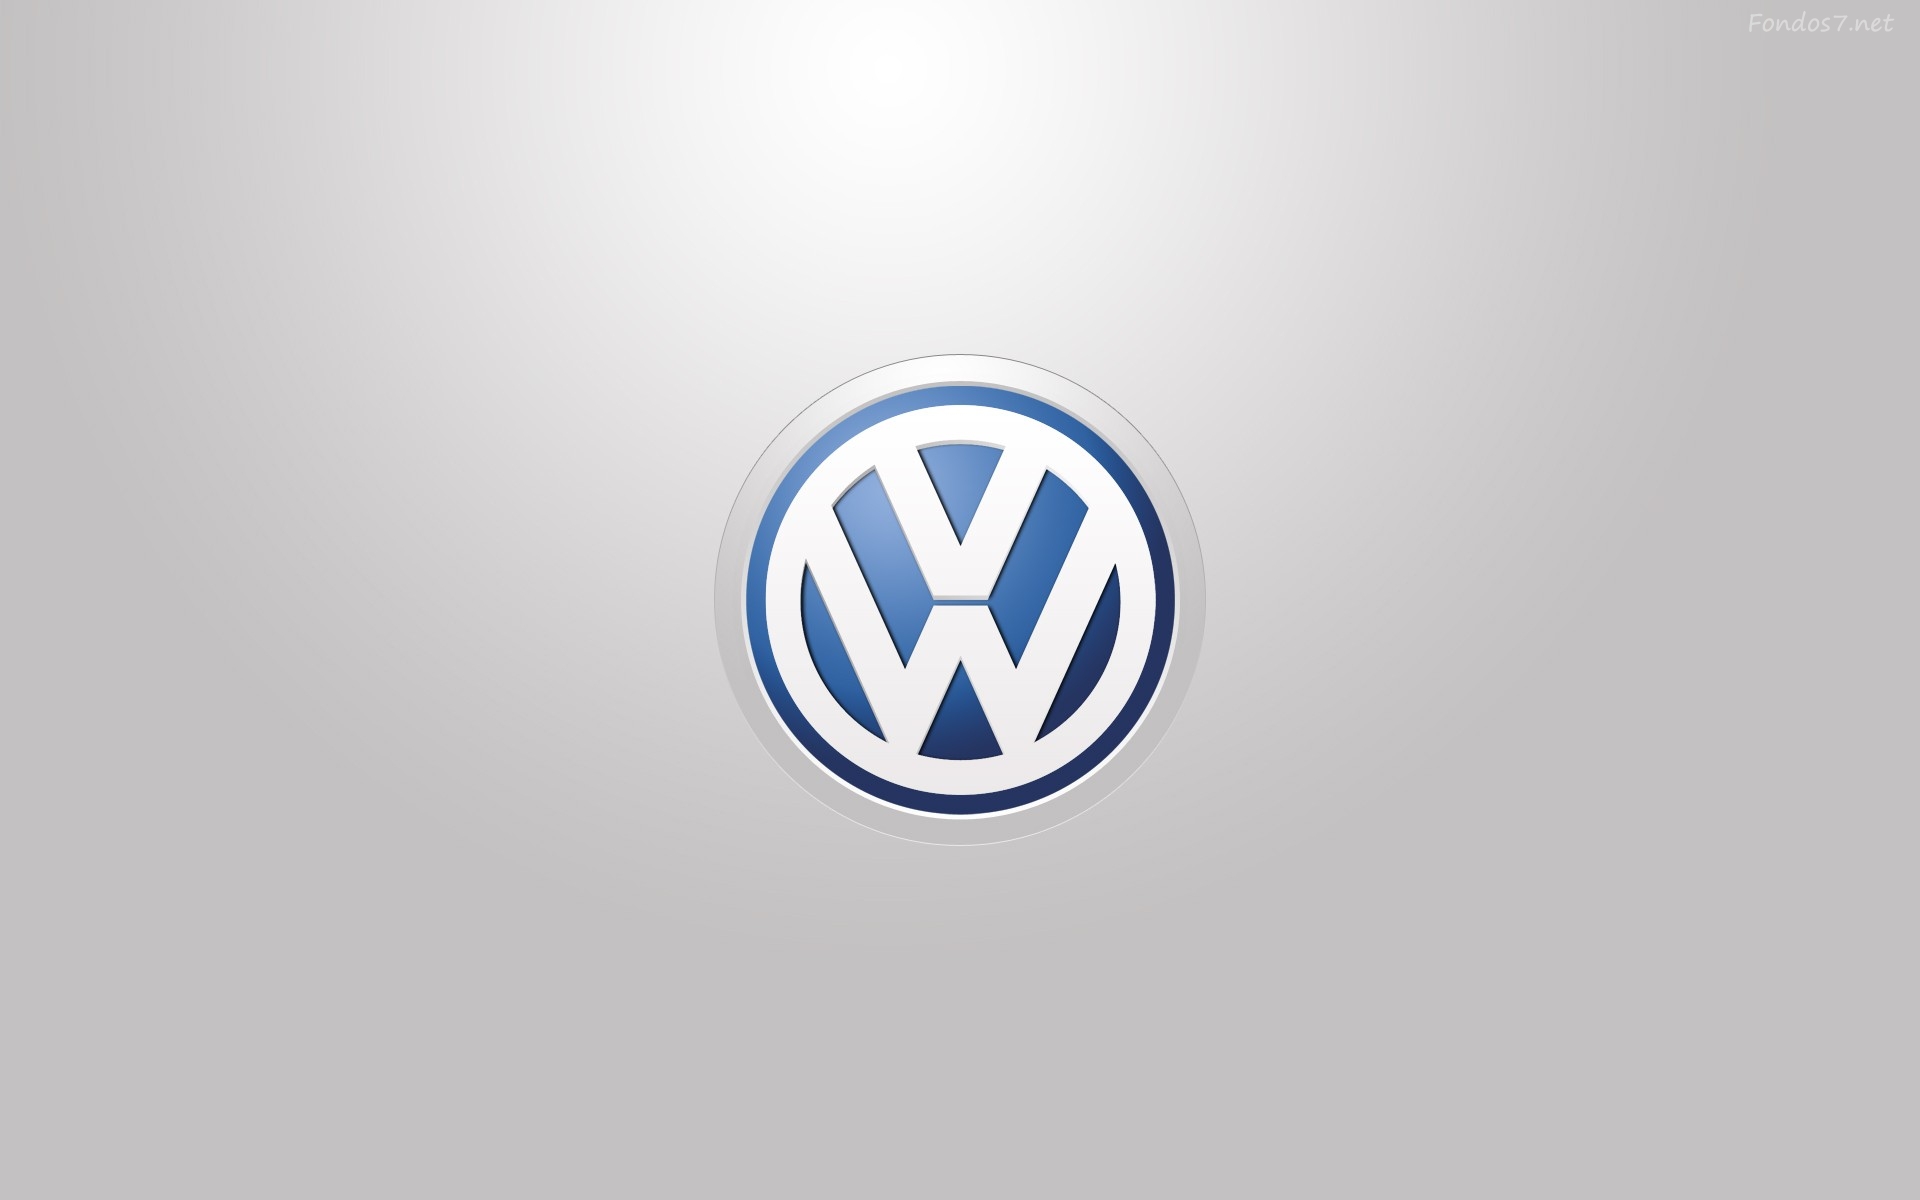 Descargar Fondos de pantalla volkswagen logo hd widescreen Gratis 1920x1200